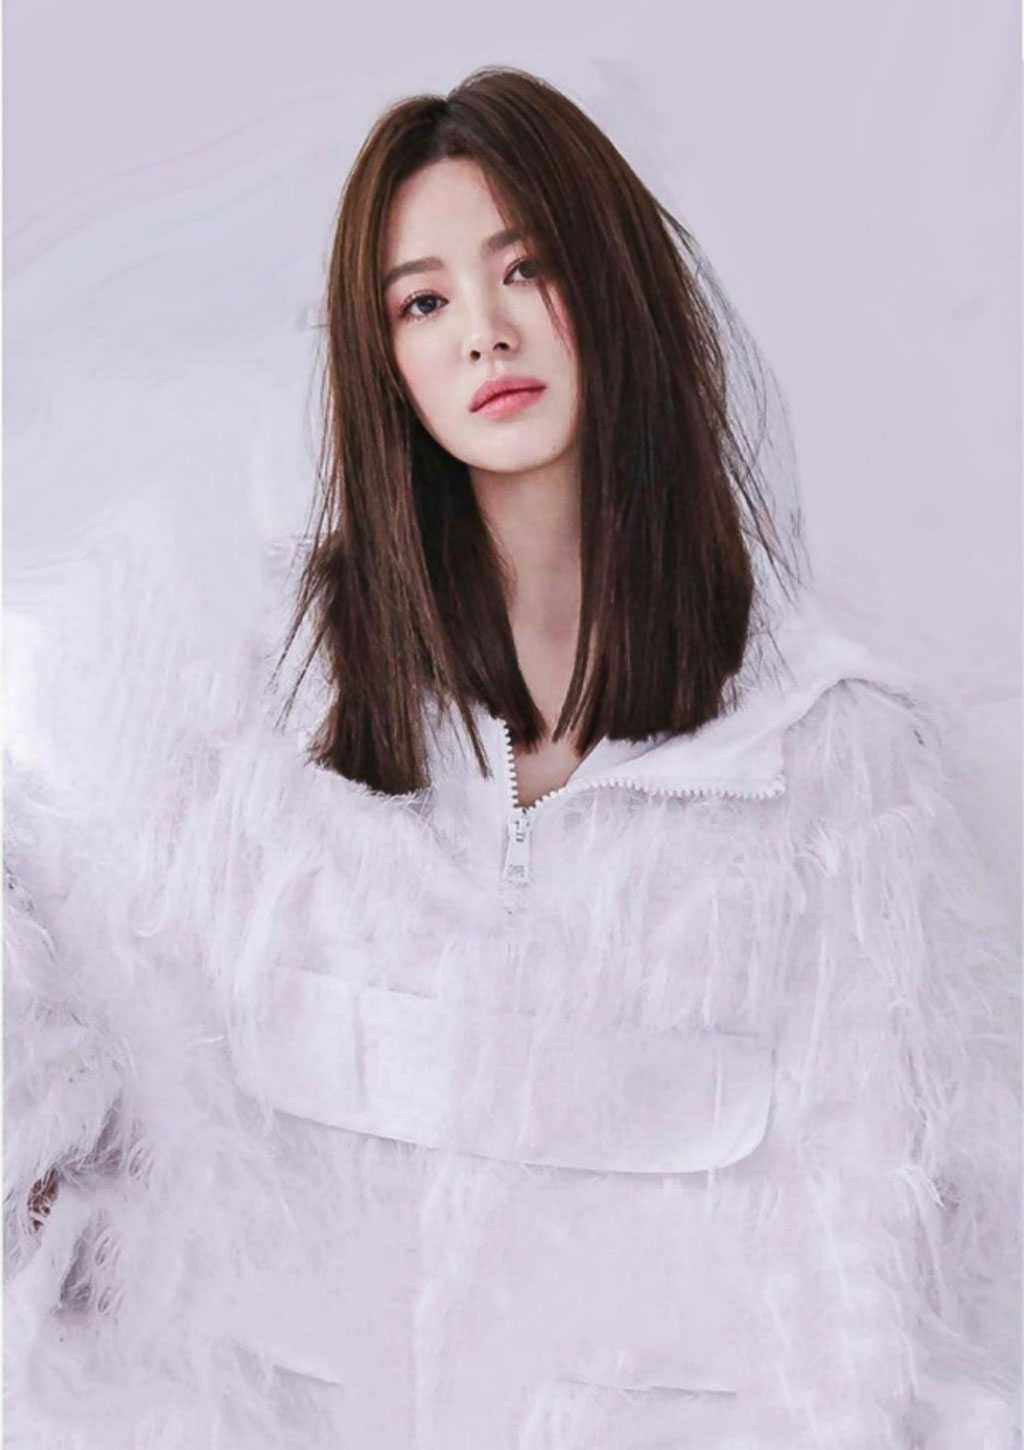 Song Hye Kyo khoe vẻ đẹp không tuổi trên bìa tạp chí Harper's Bazaar1